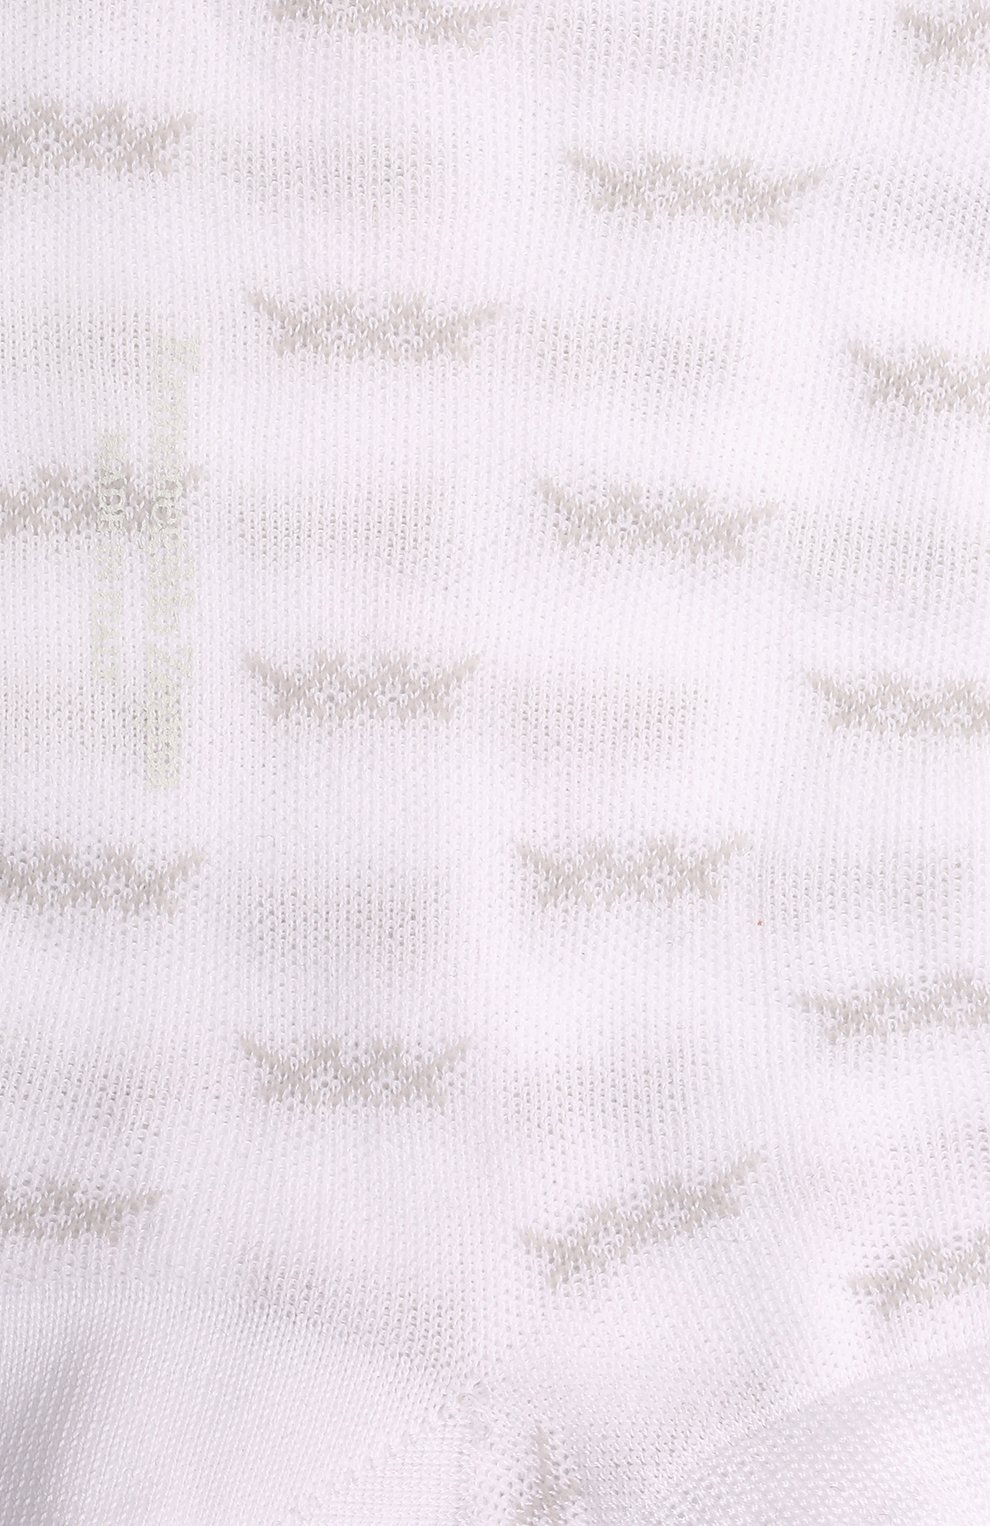 Мужские хлопковые носки ERMENEGILDO ZEGNA белого цвета, арт. N5V025030 | Фото 2 (Кросс-КТ: бельё; Материал внешний: Хлопок)